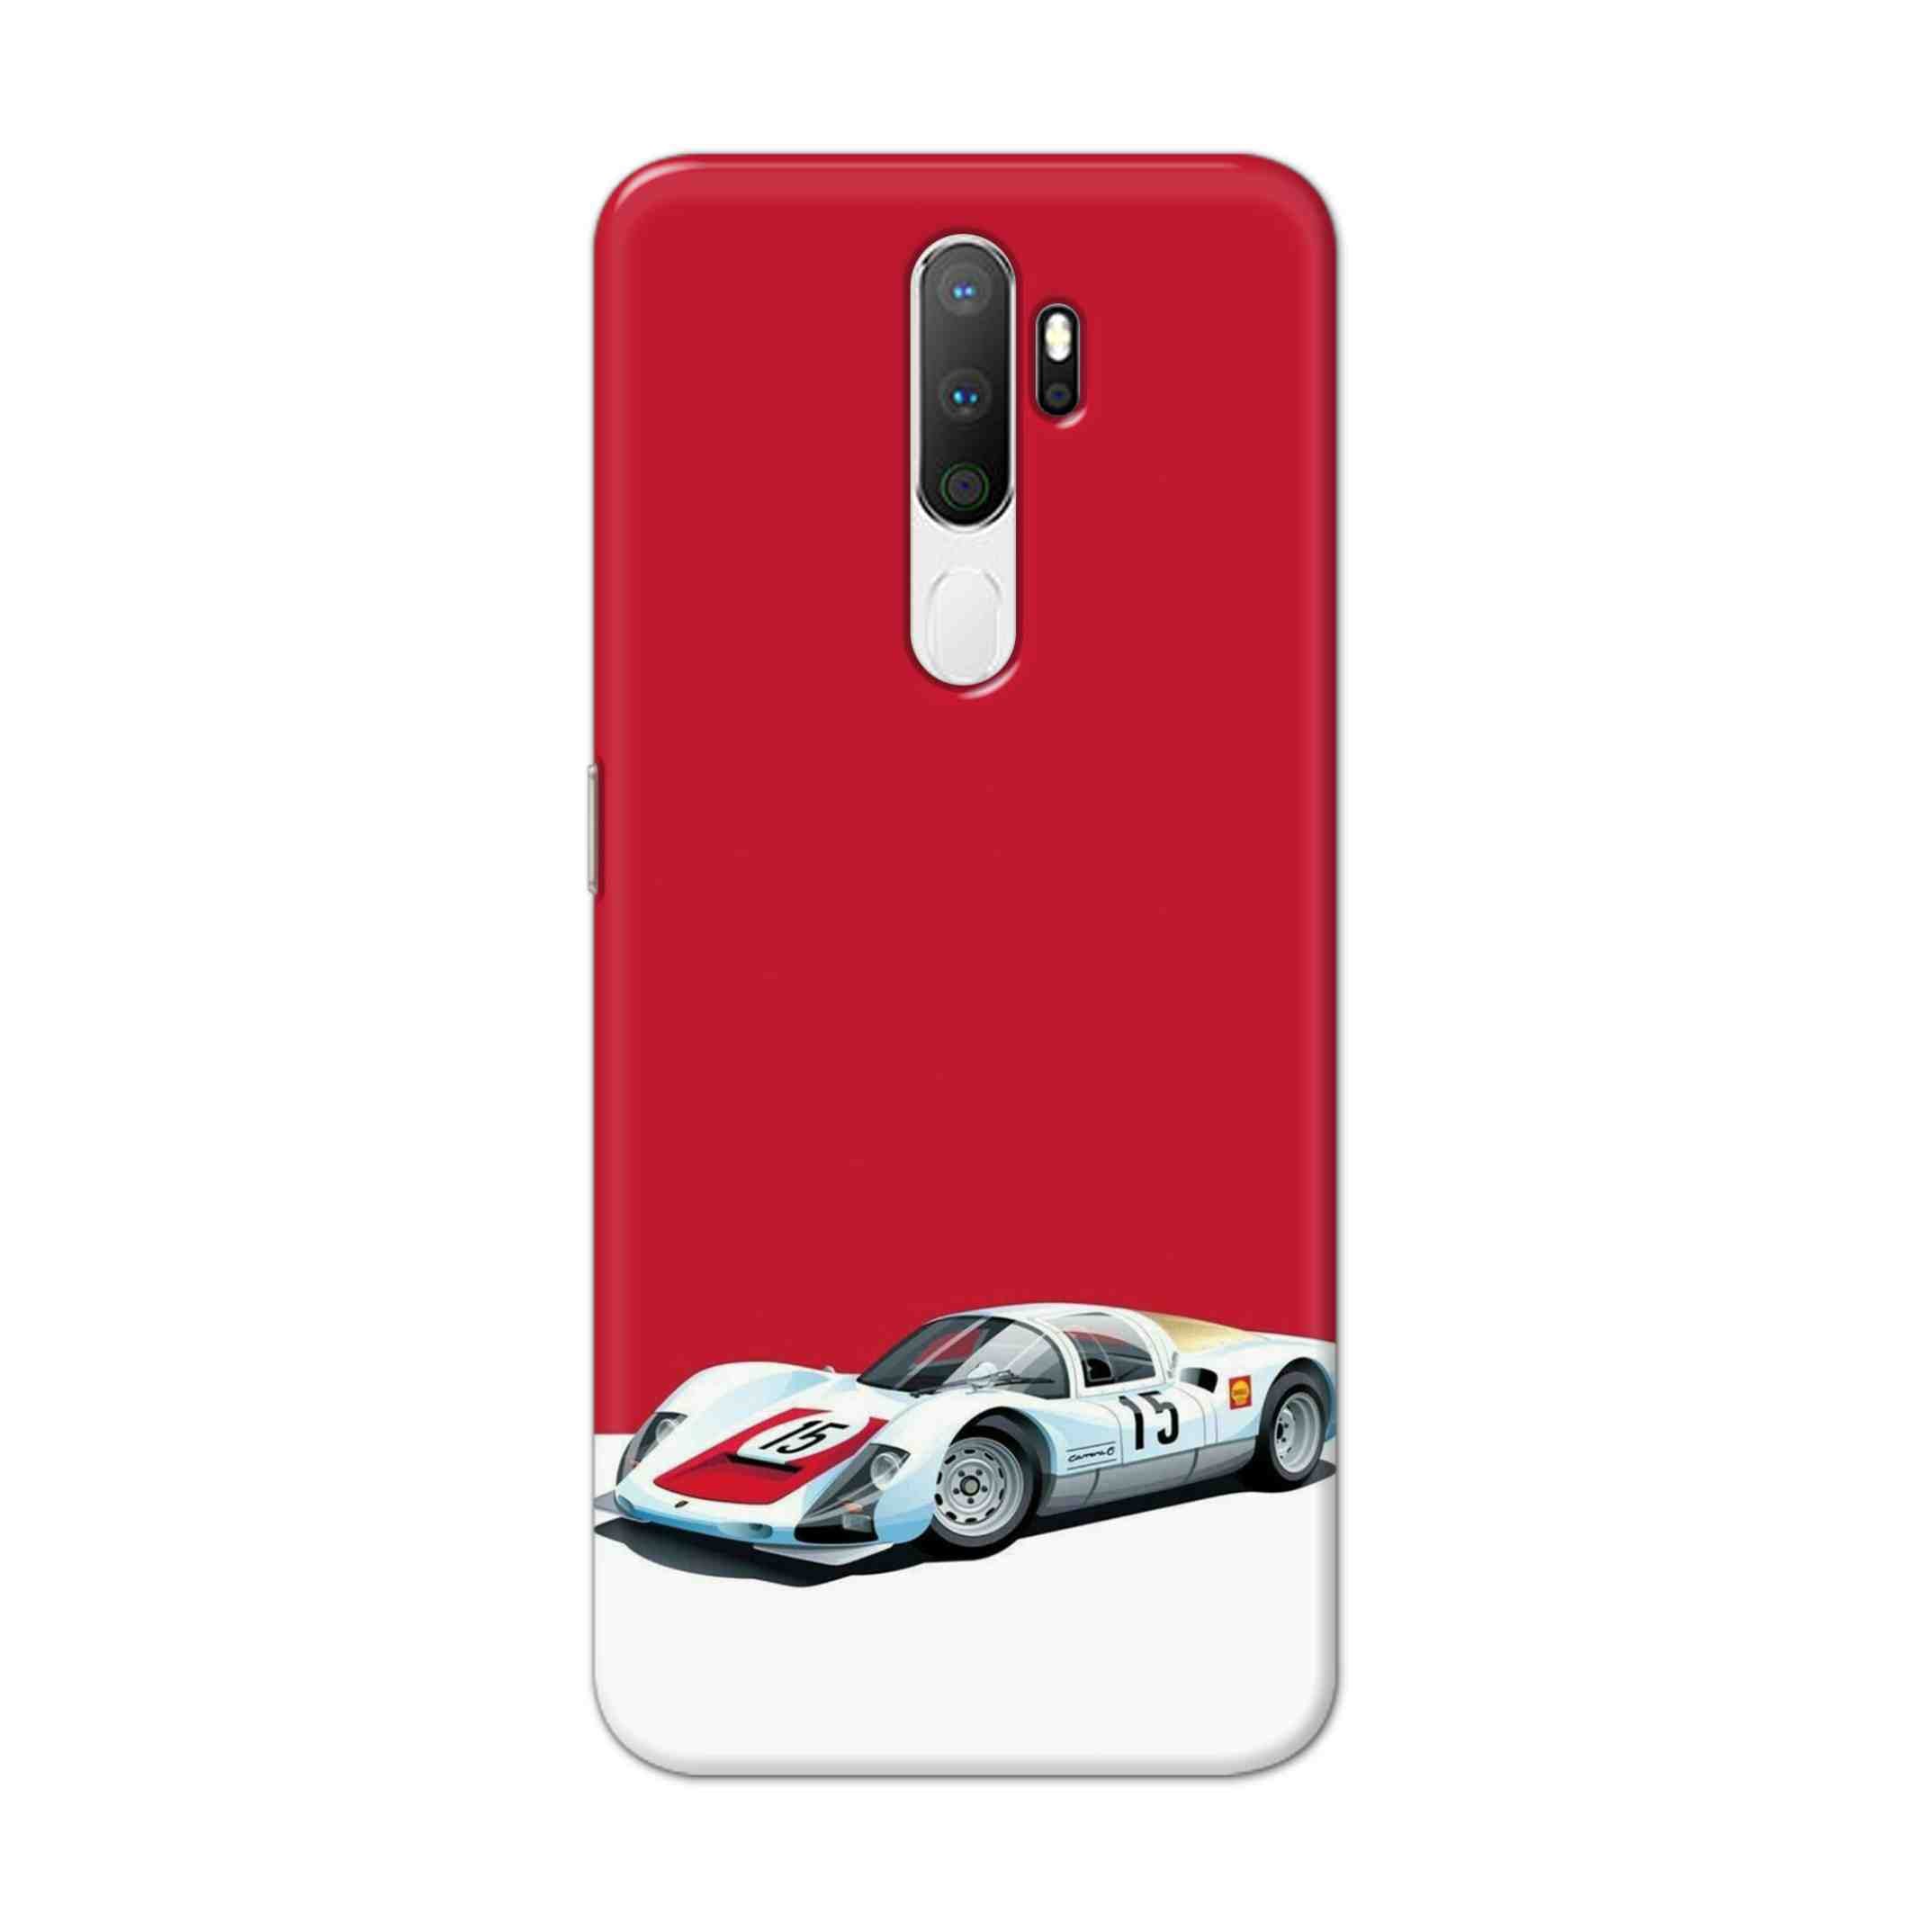 Buy Ferrari F15 Hard Back Mobile Phone Case Cover For Oppo A5 (2020) Online